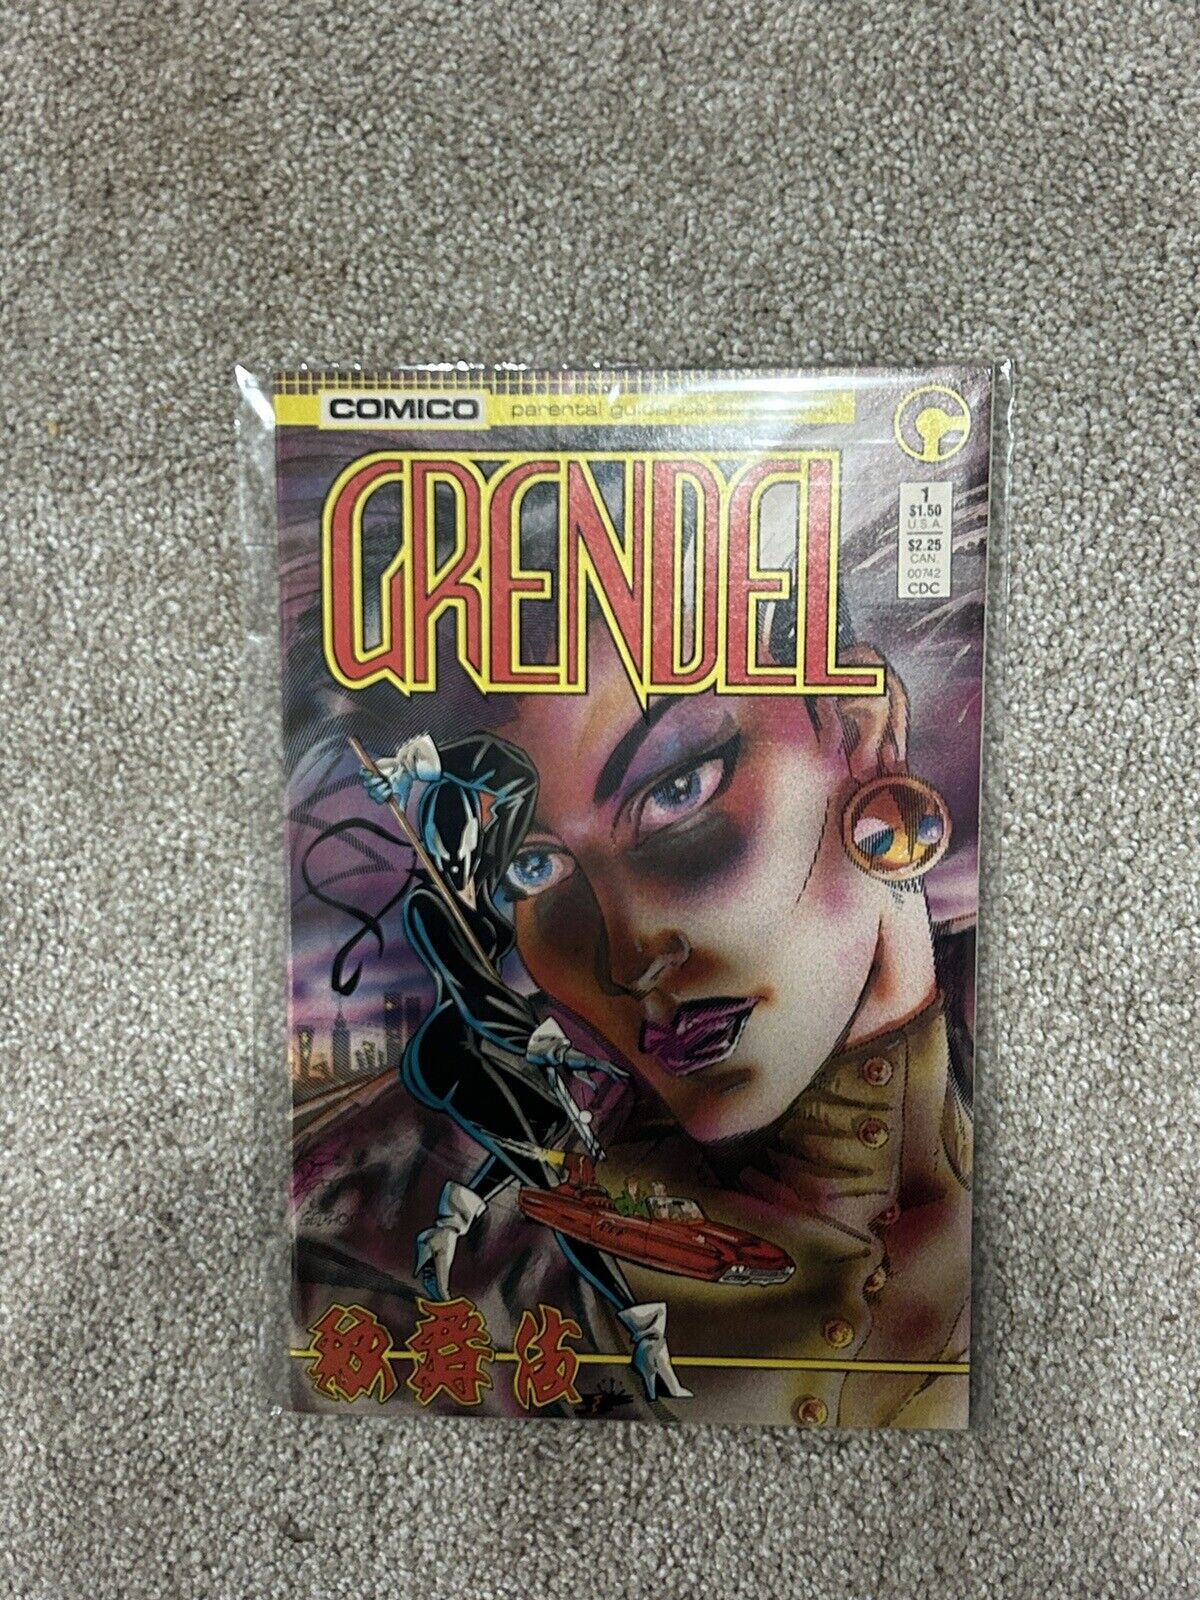 Grendel #1 (Comico Comics October 1986)